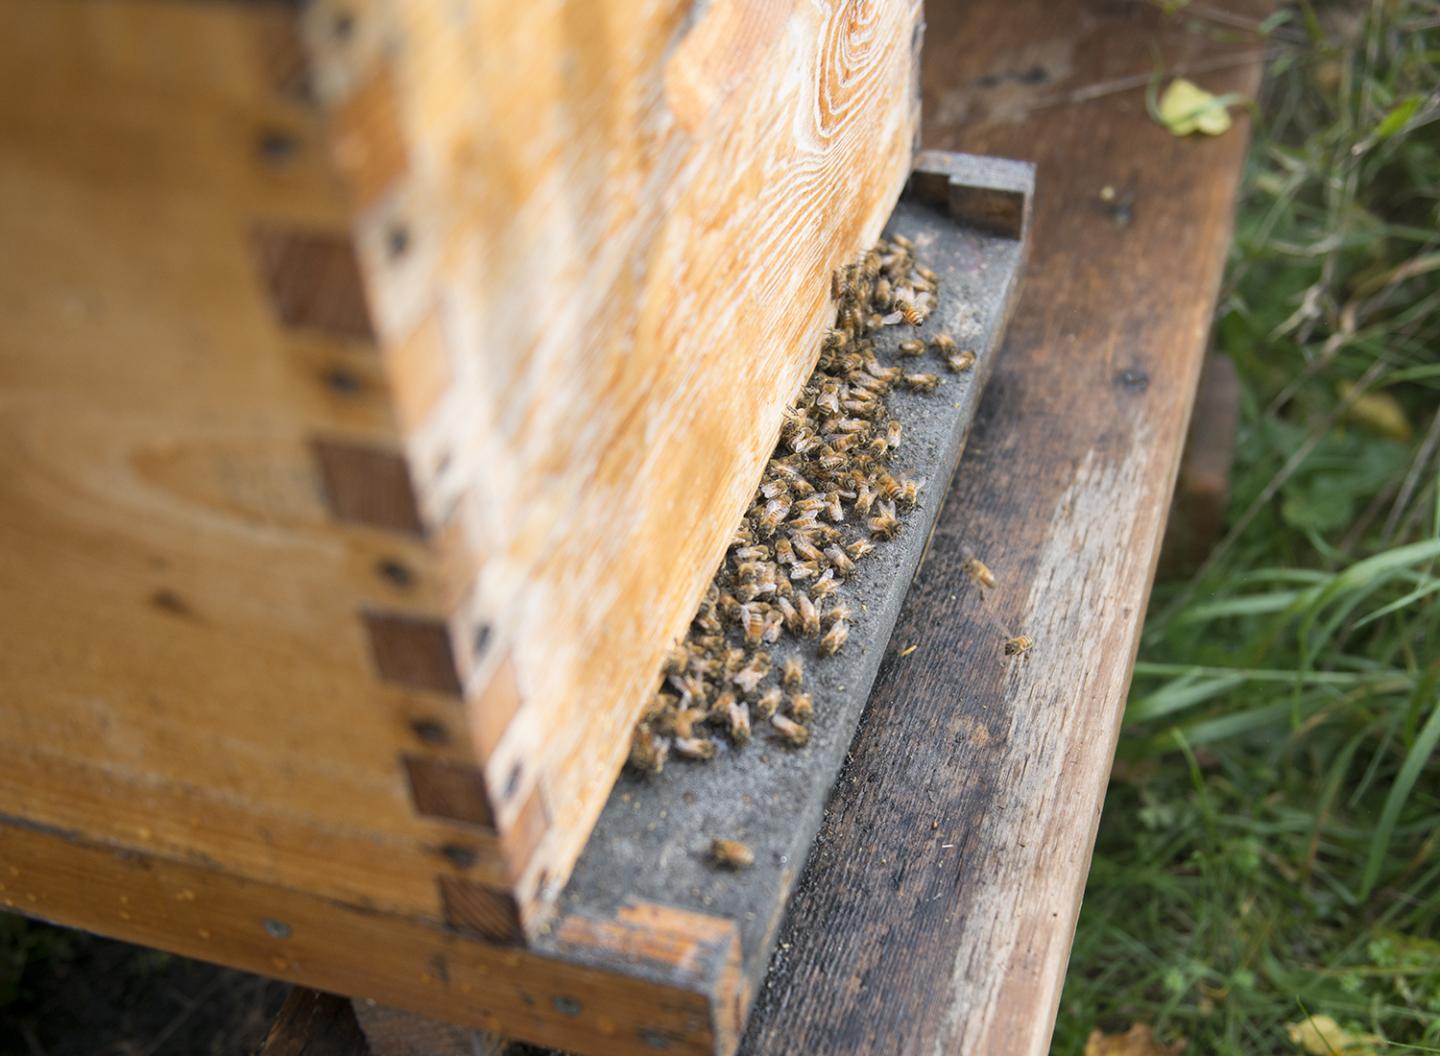 Honey Bees at Experimental Apiary at Western